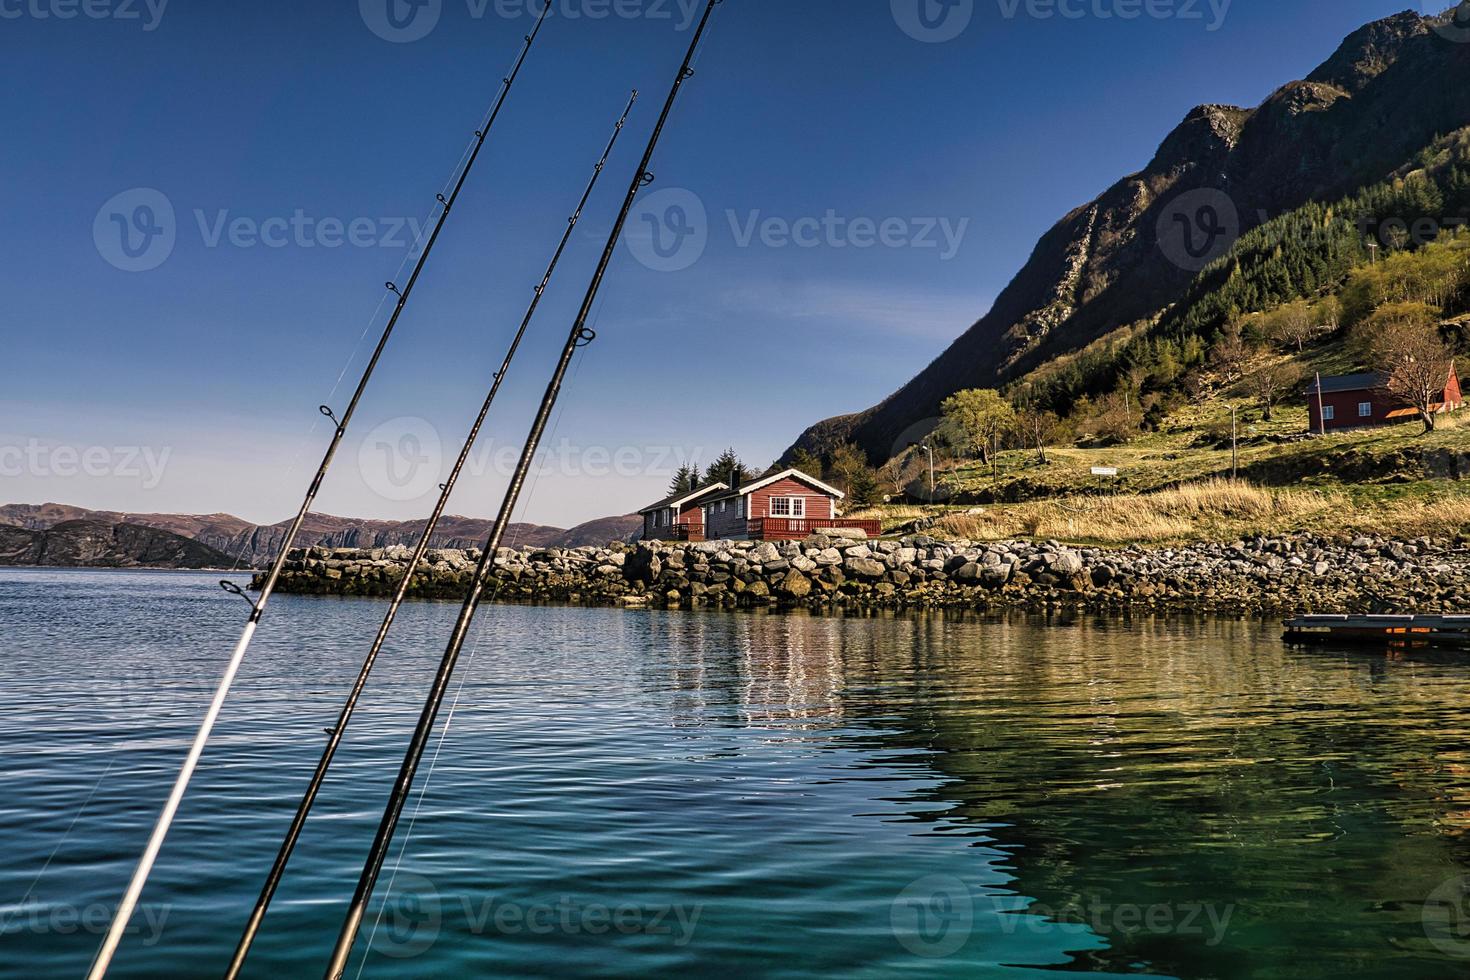 visvakantie in selje noorwegen. hengel en molen zijn klaar om te vissen. een paradijs voor vissers foto